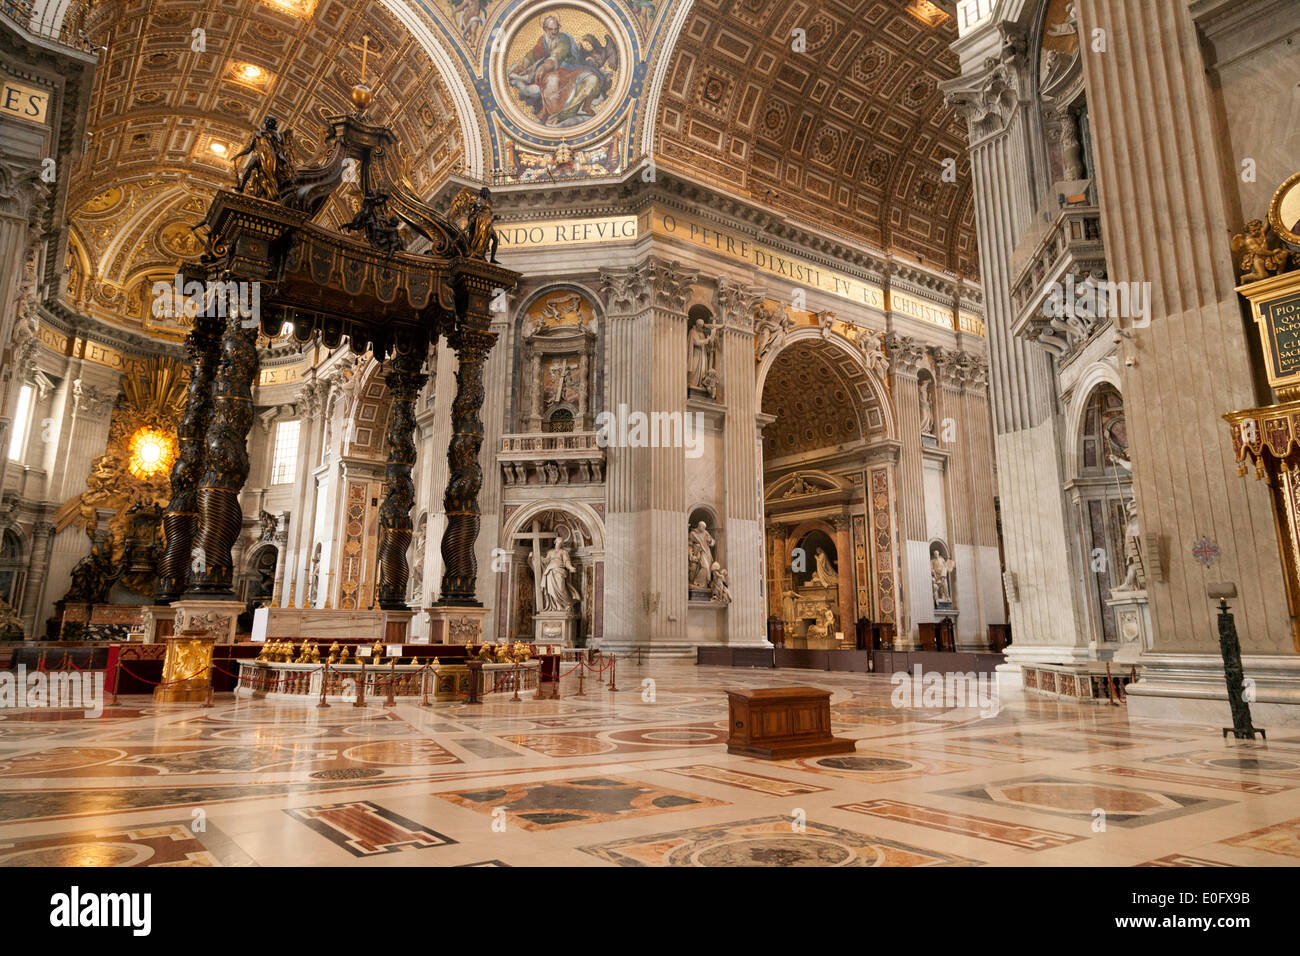 L'autel et du Bernini Baldacchino en bronze, Basilique St Pierre, Vatican, Rome Italie Europe Banque D'Images